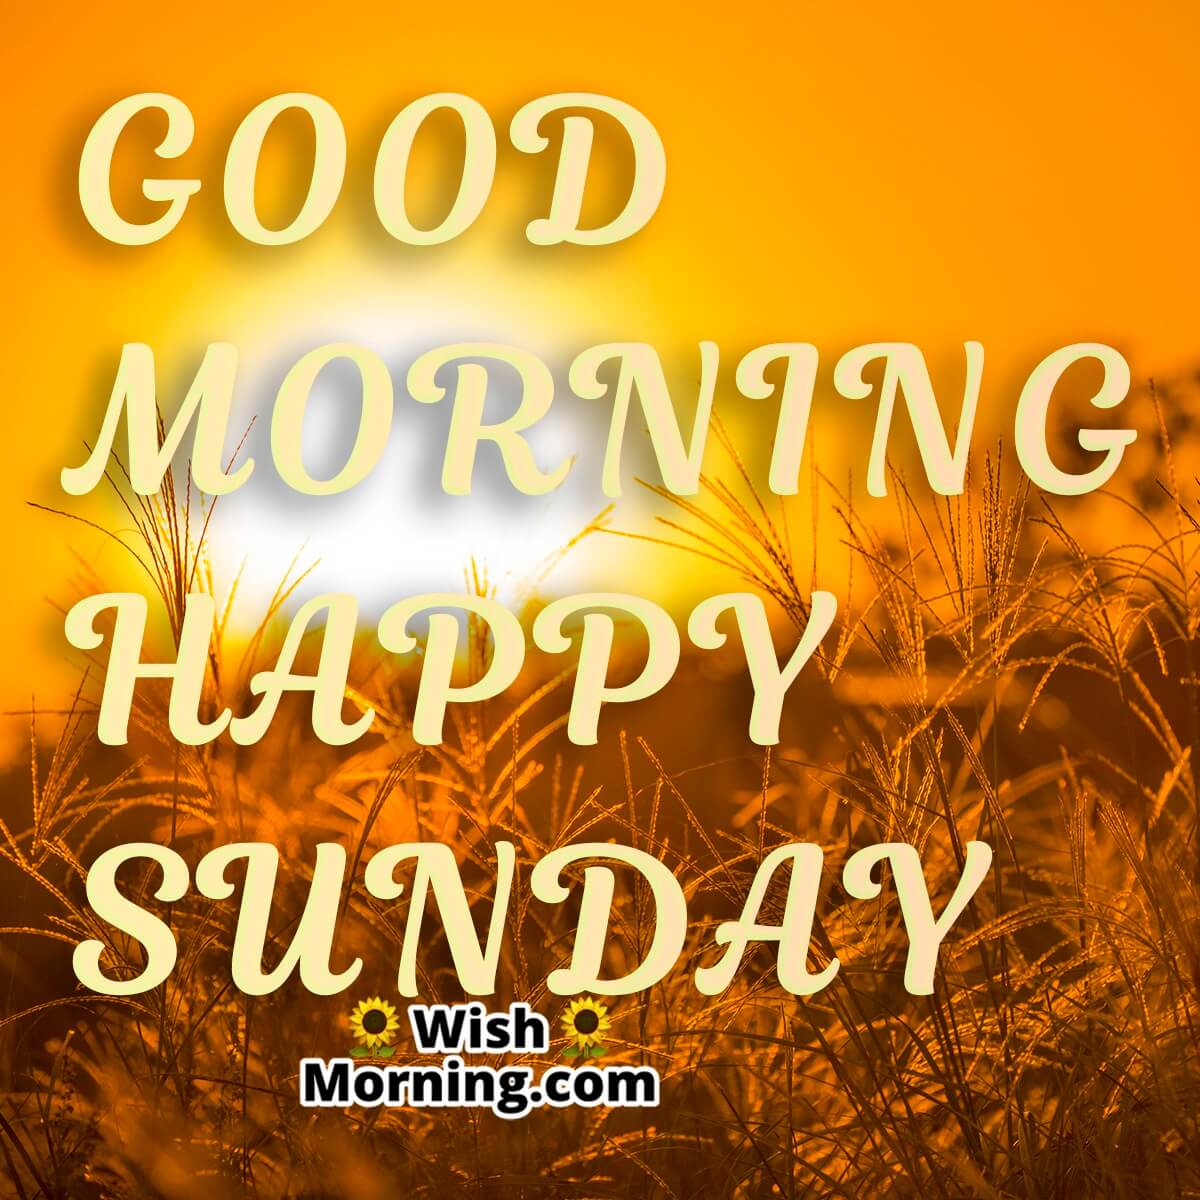 Sunday Morning Wishes - Wish Morning